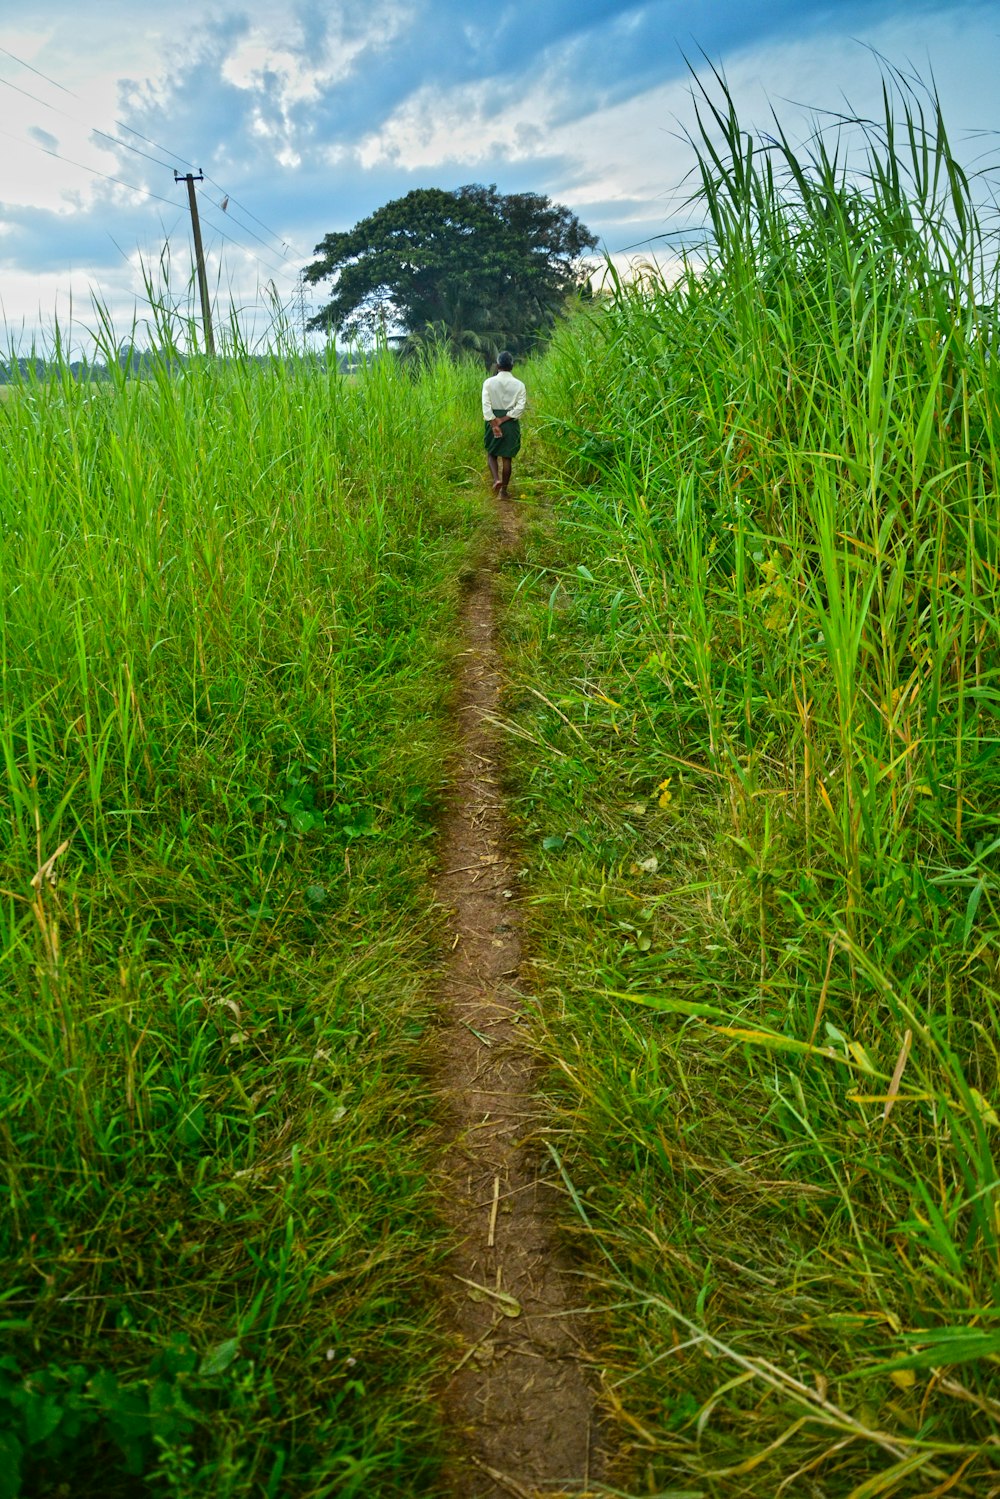 a person walking down a dirt path through tall grass